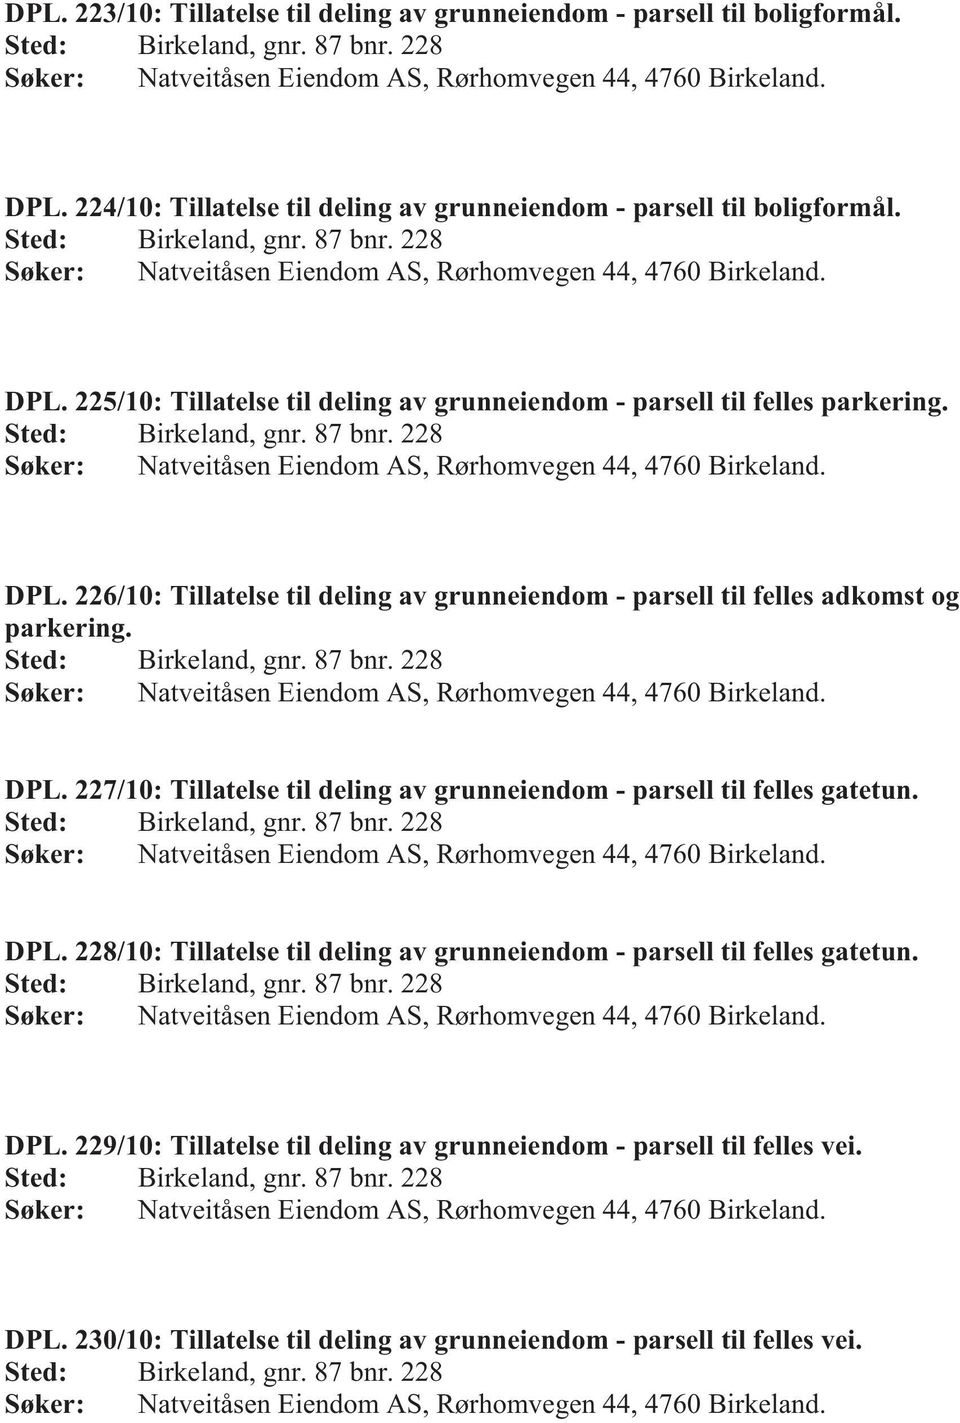 225/10: Tillatelse til deling av grunneiendom - parsell til felles parkering. Sted: Birkeland, gnr. 87 bnr. 228 Søker: Natveitåsen Eiendom AS, Rørhomvegen 44, 4760 Birkeland. DPL.